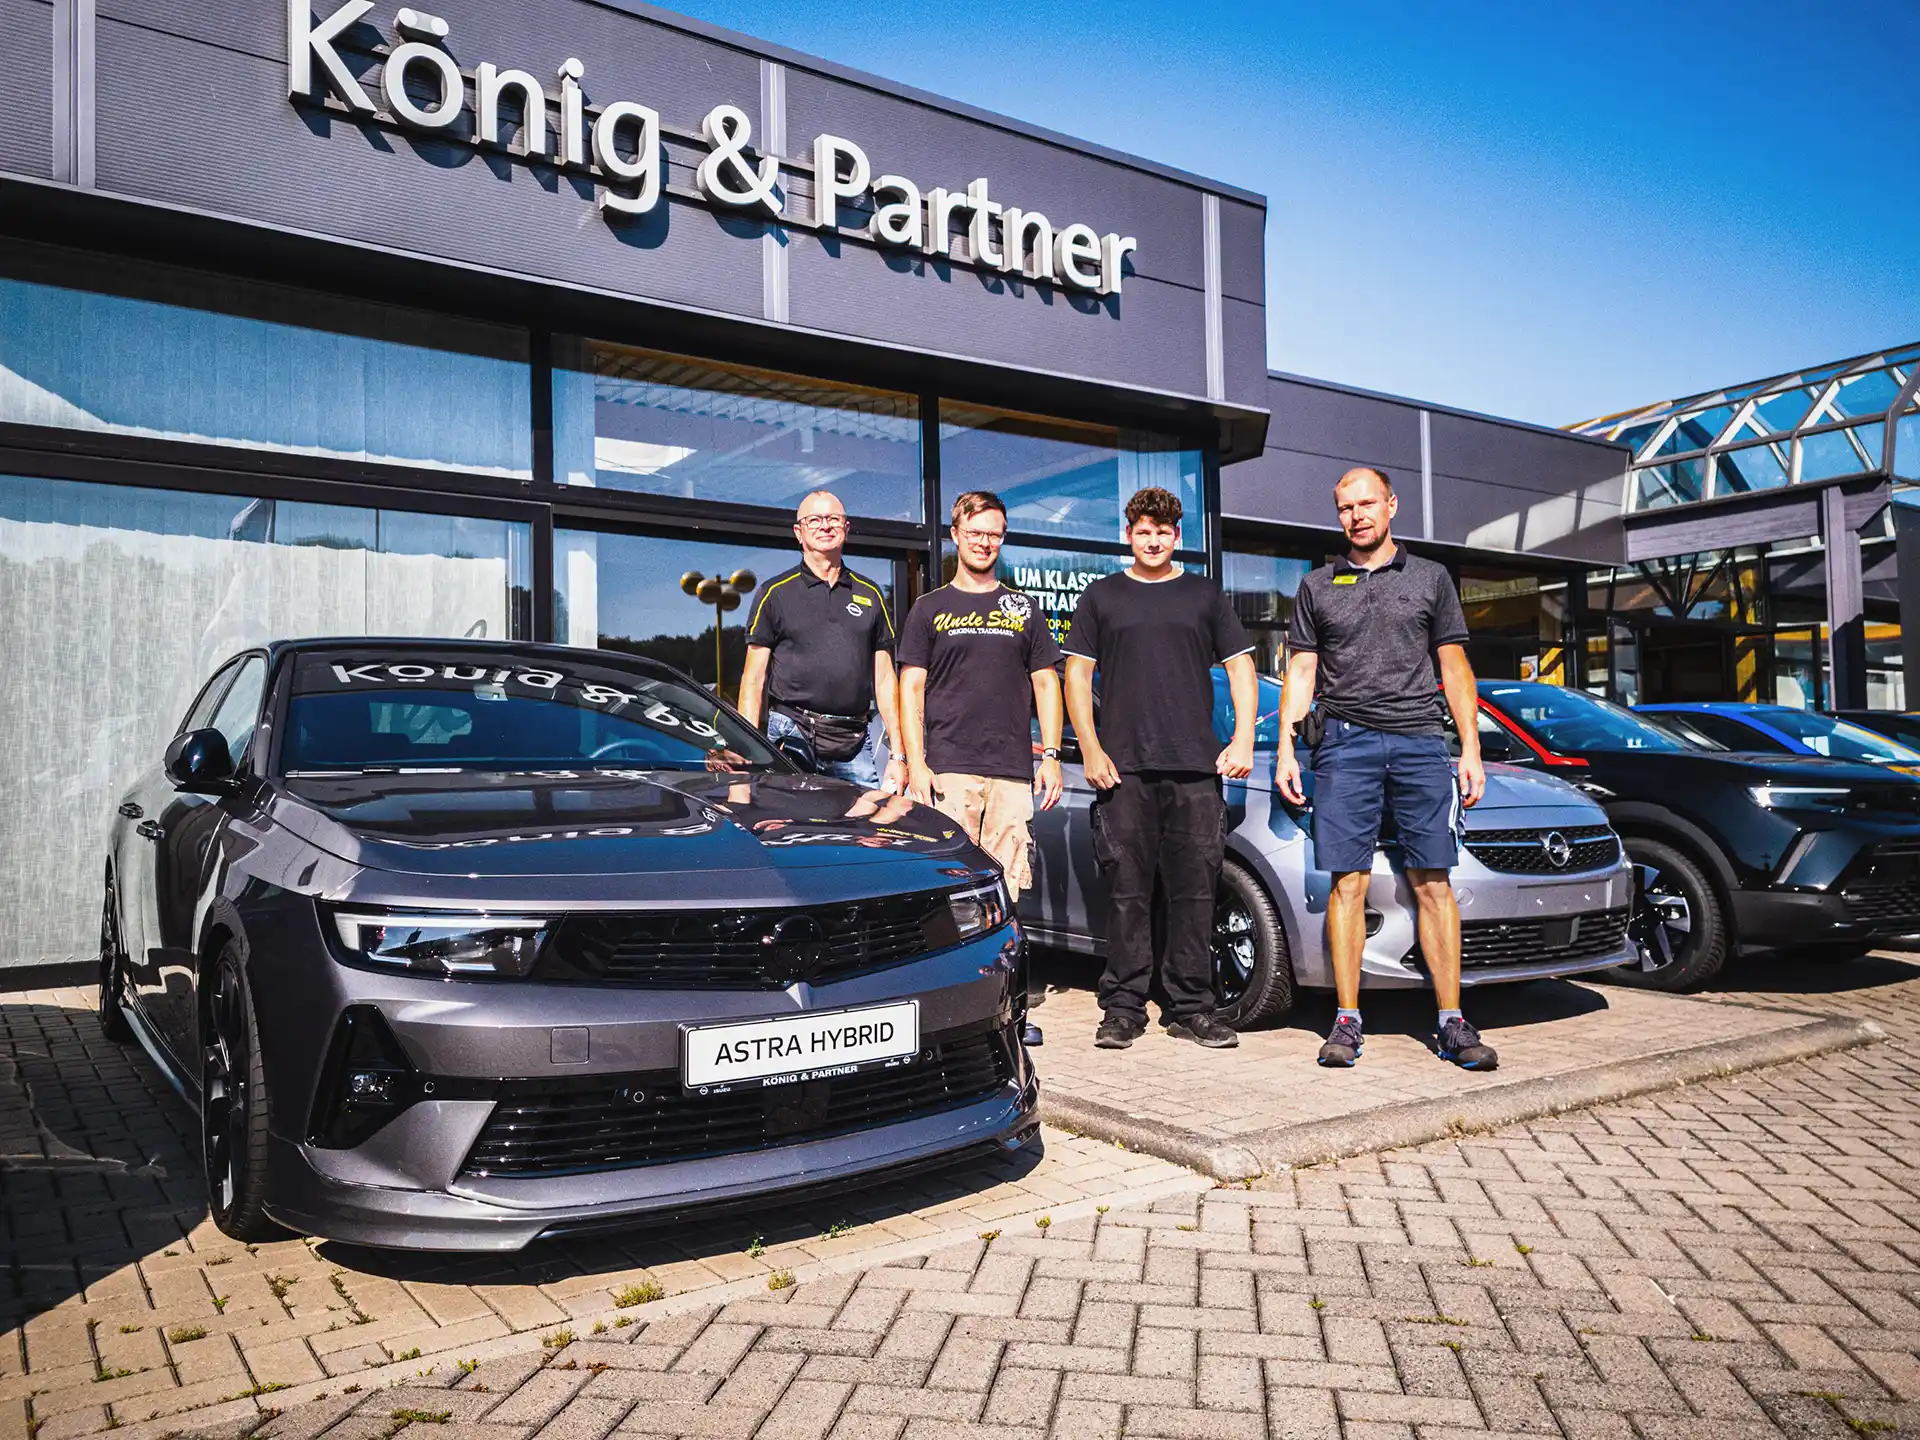 2 Kfz-Mechatroniker-Azubis mit Serviceleiter und Werkstattmeister vor dem Autohaus König & Partner